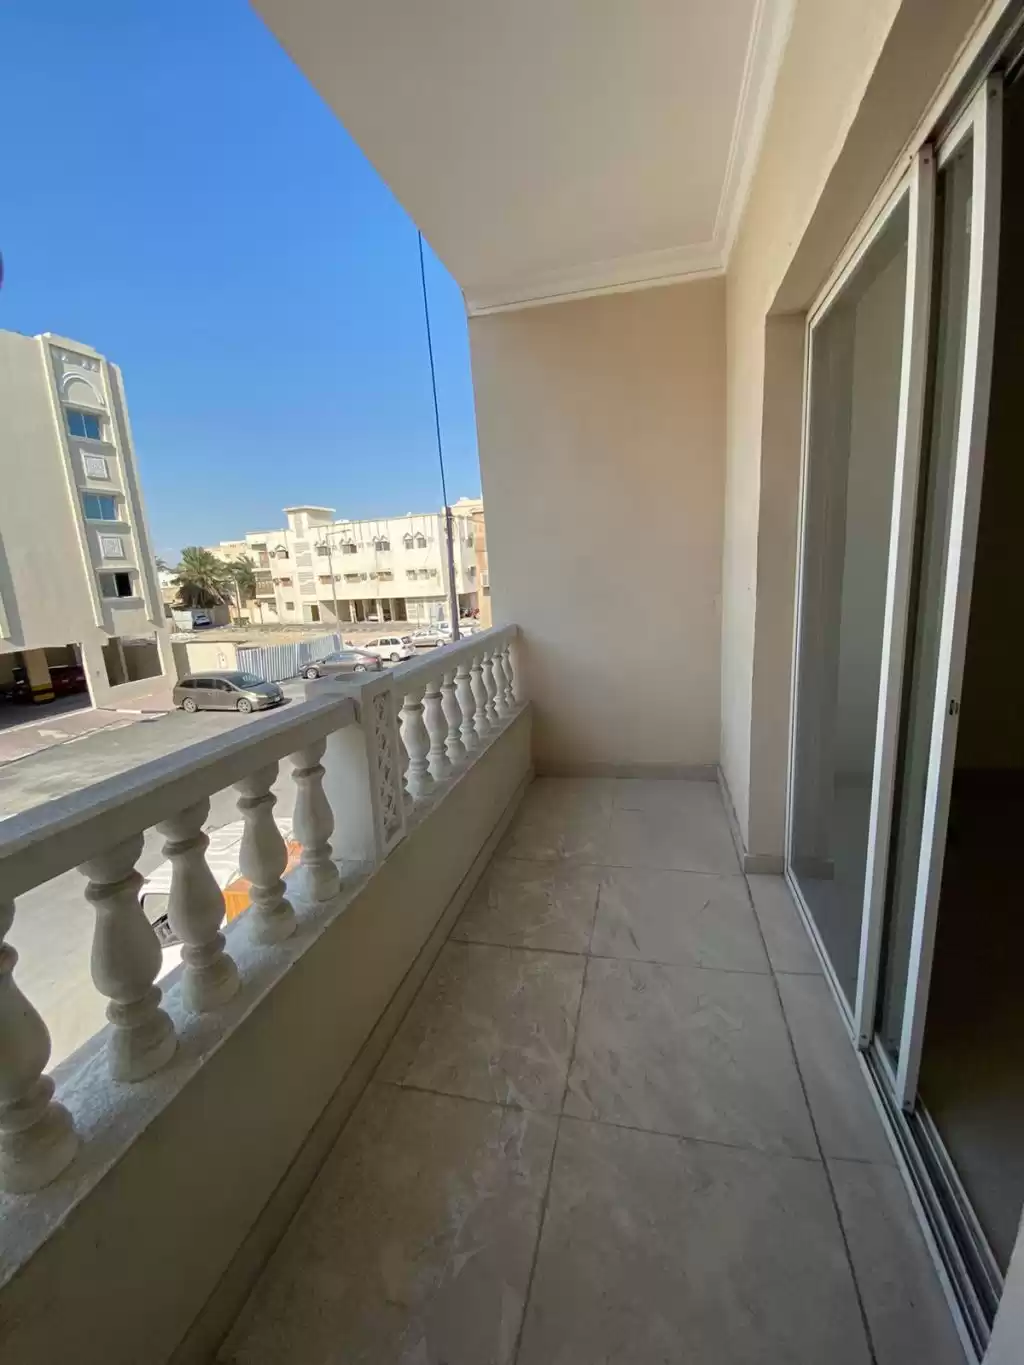 Résidentiel Propriété prête 3 chambres U / f Appartement  a louer au Doha #11206 - 1  image 